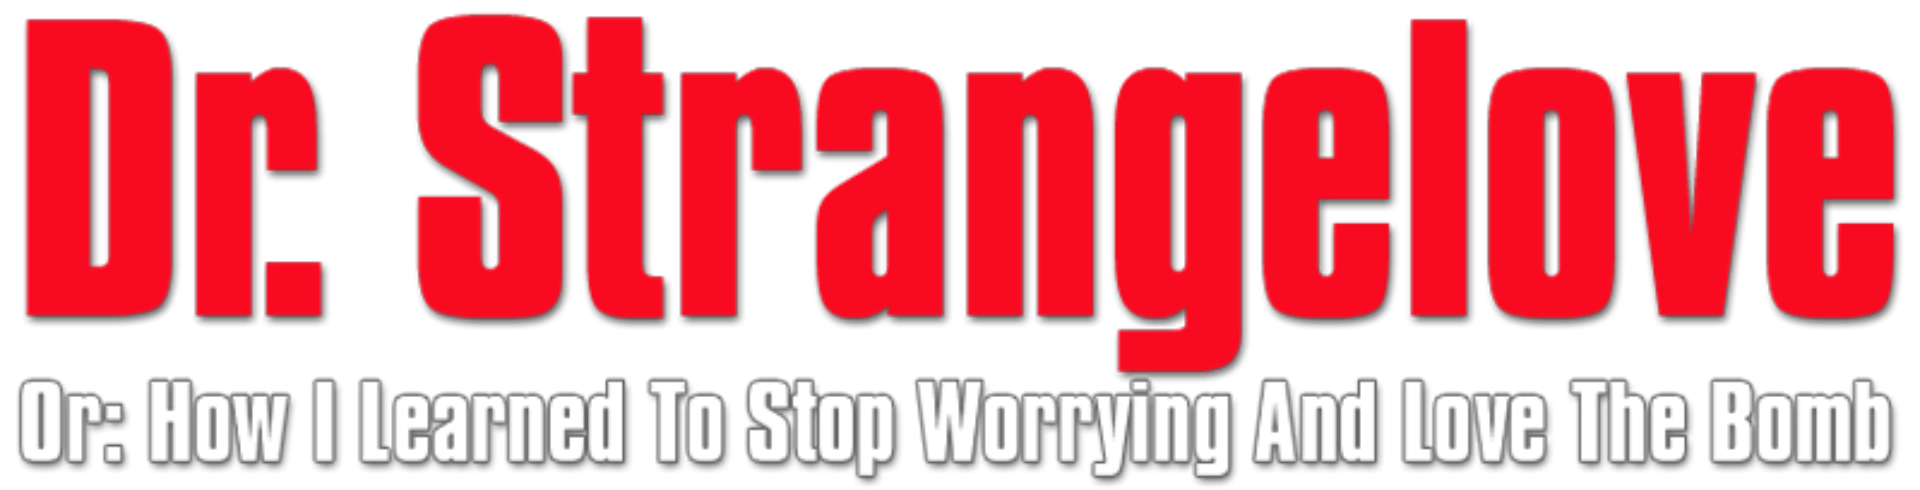 Dr. Strangelove PNG Images HD